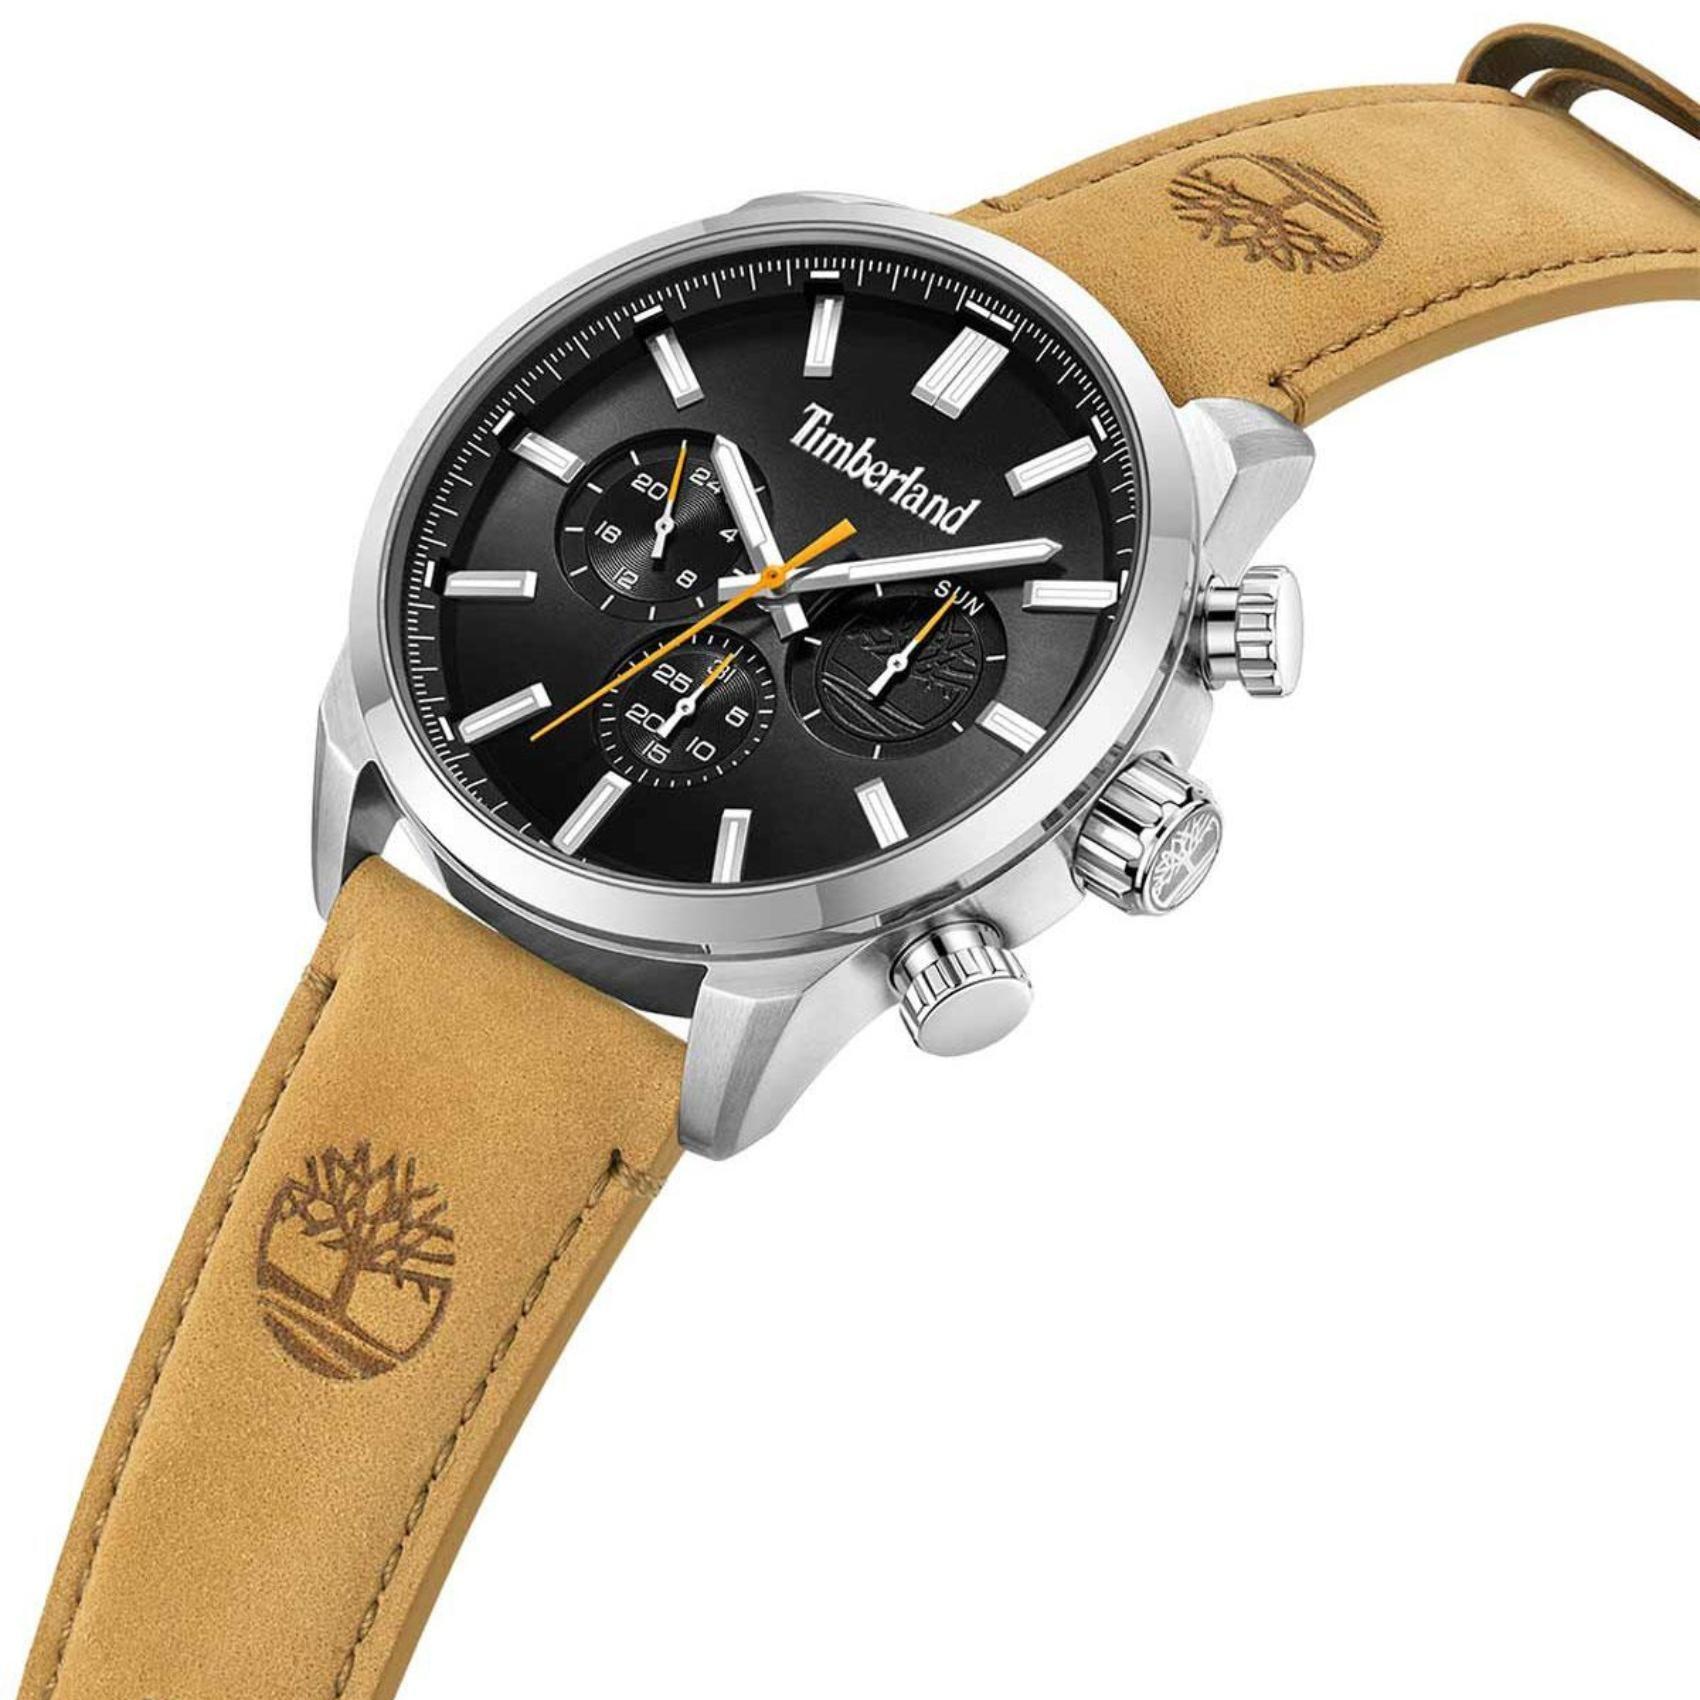 Αντρικό ρολόι Timberland Henniker II TDWGF0028701 με ταμπά δερμάτινο λουράκι και μαύρο καντράν διαμέτρου 46mm και ημέρα-ημερομηνία.